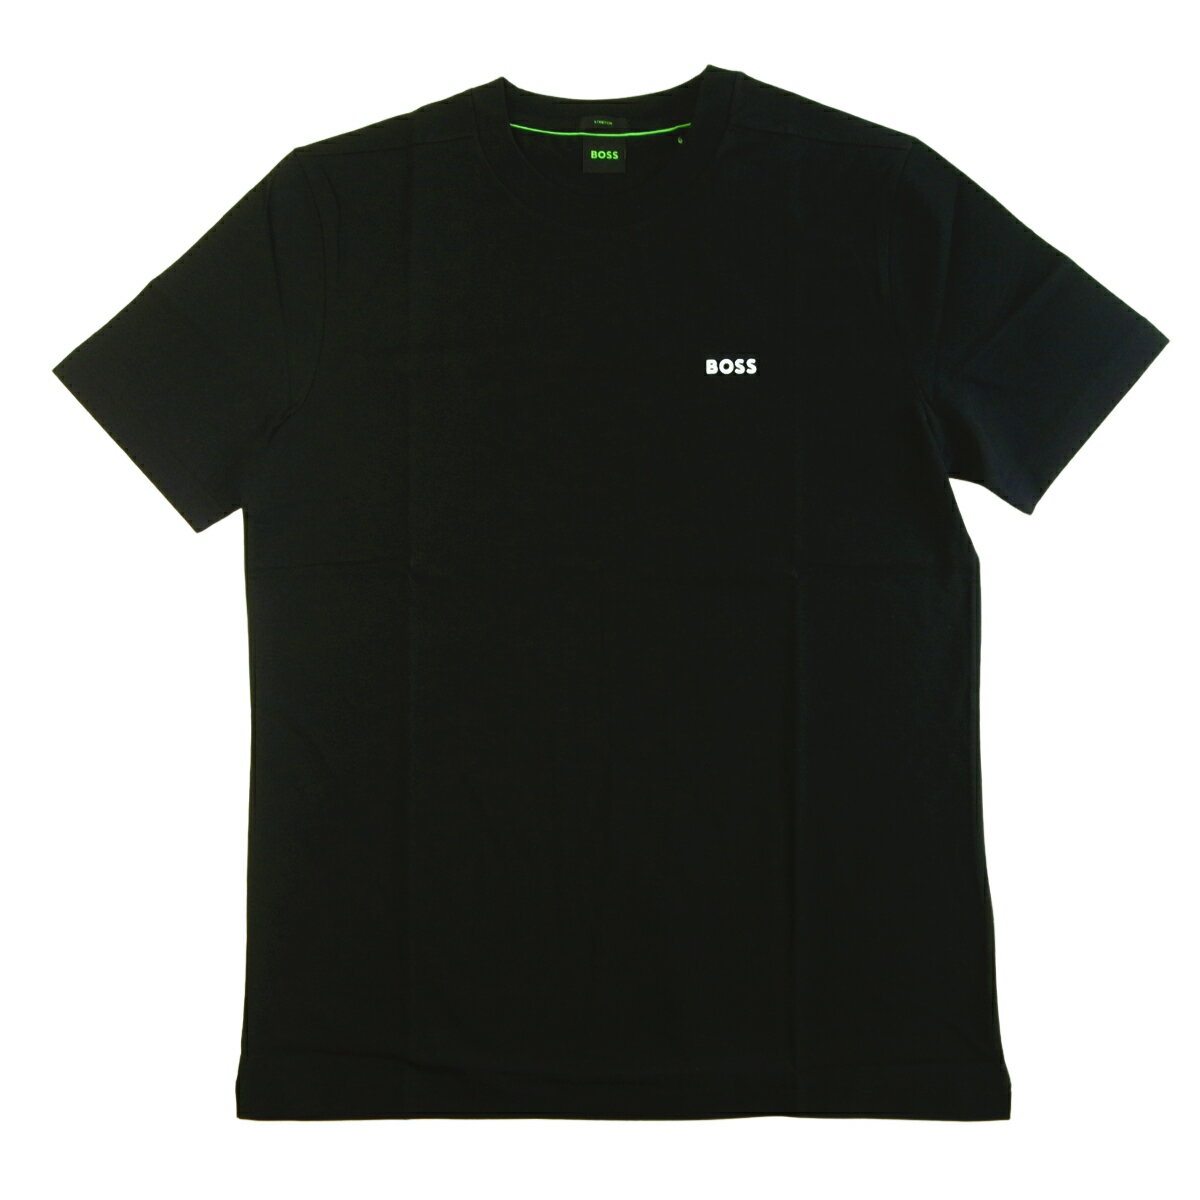 HUGO BOSS ヒューゴボス Tシャツ TChup メンズ ストレッチコットン Regular Fit レギュラーフィット ブラック BOSS GREEN 50469057 10110340 01 001